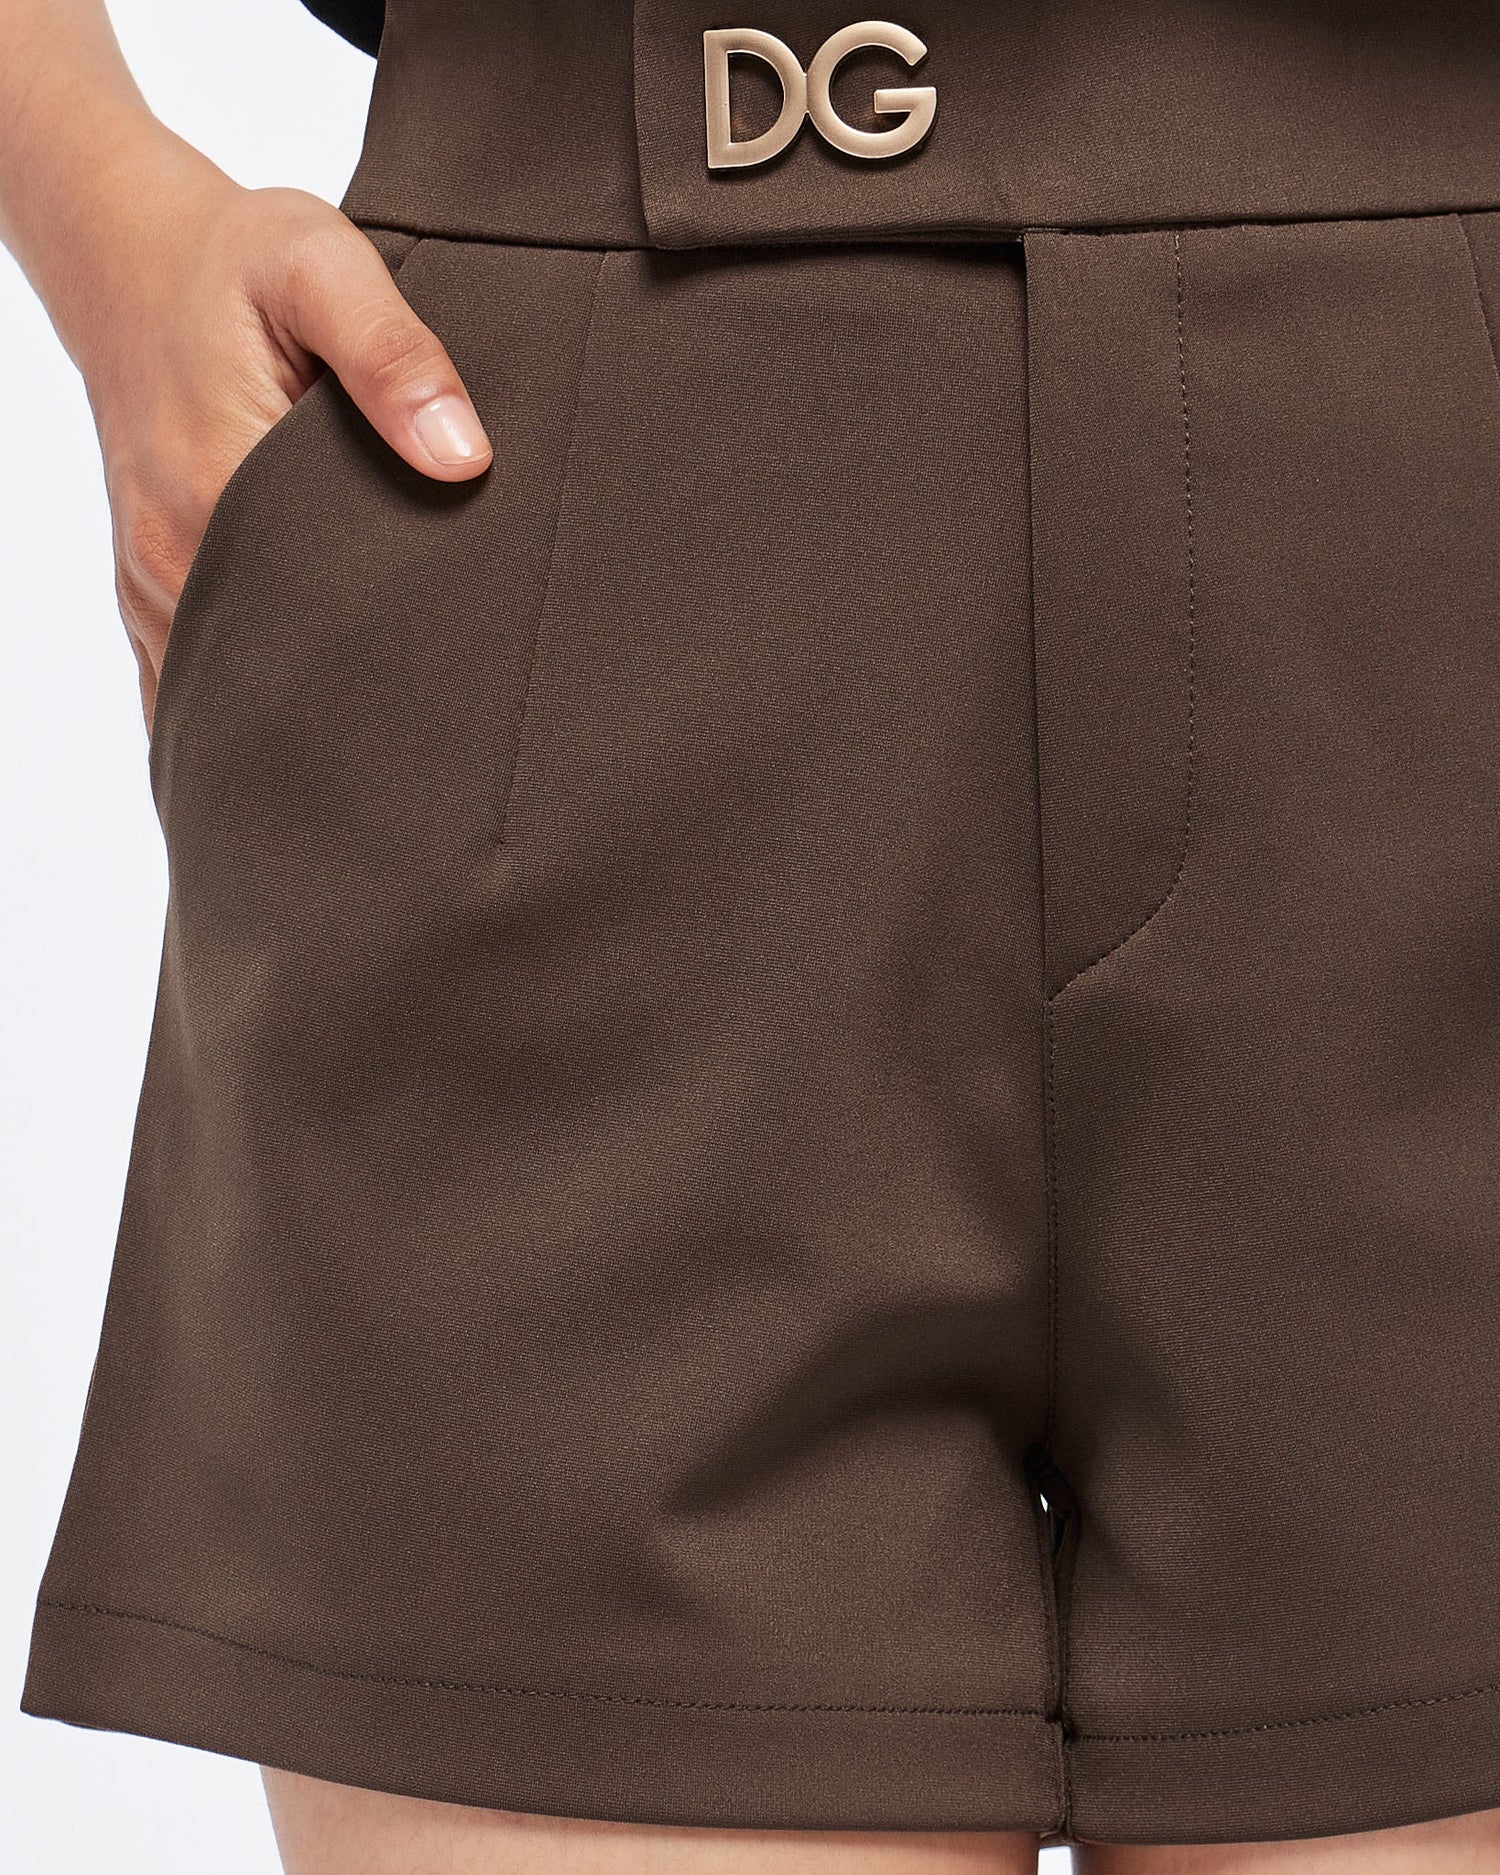 MOI OUTFIT-DG Lady Short Pants 13.90